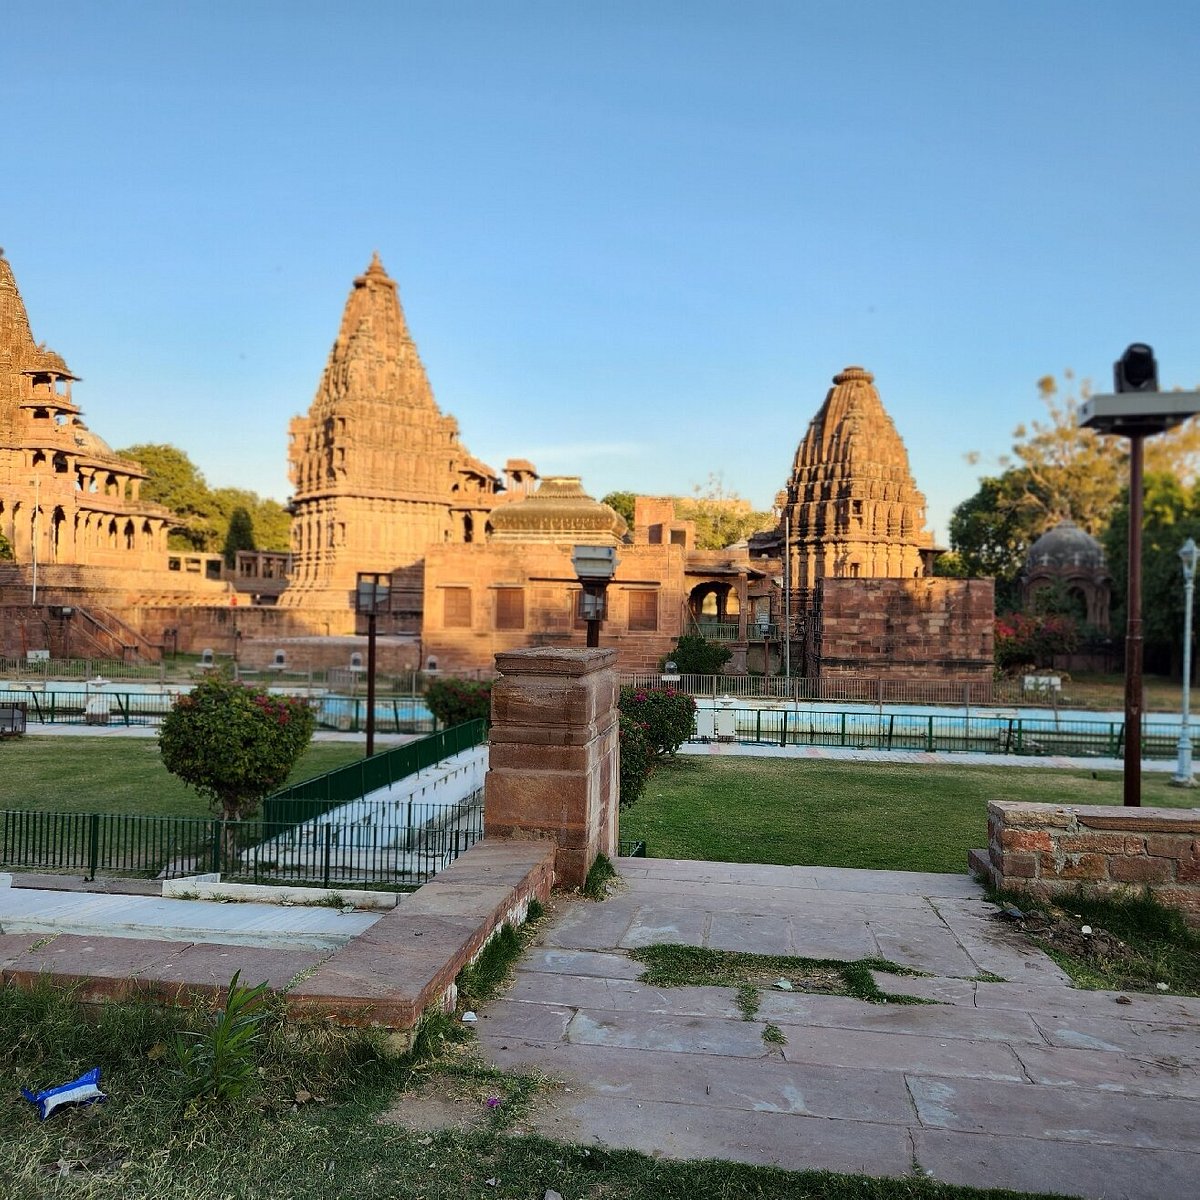 Jodhpur tuk tuk city tour - Sheeraz Ahmad